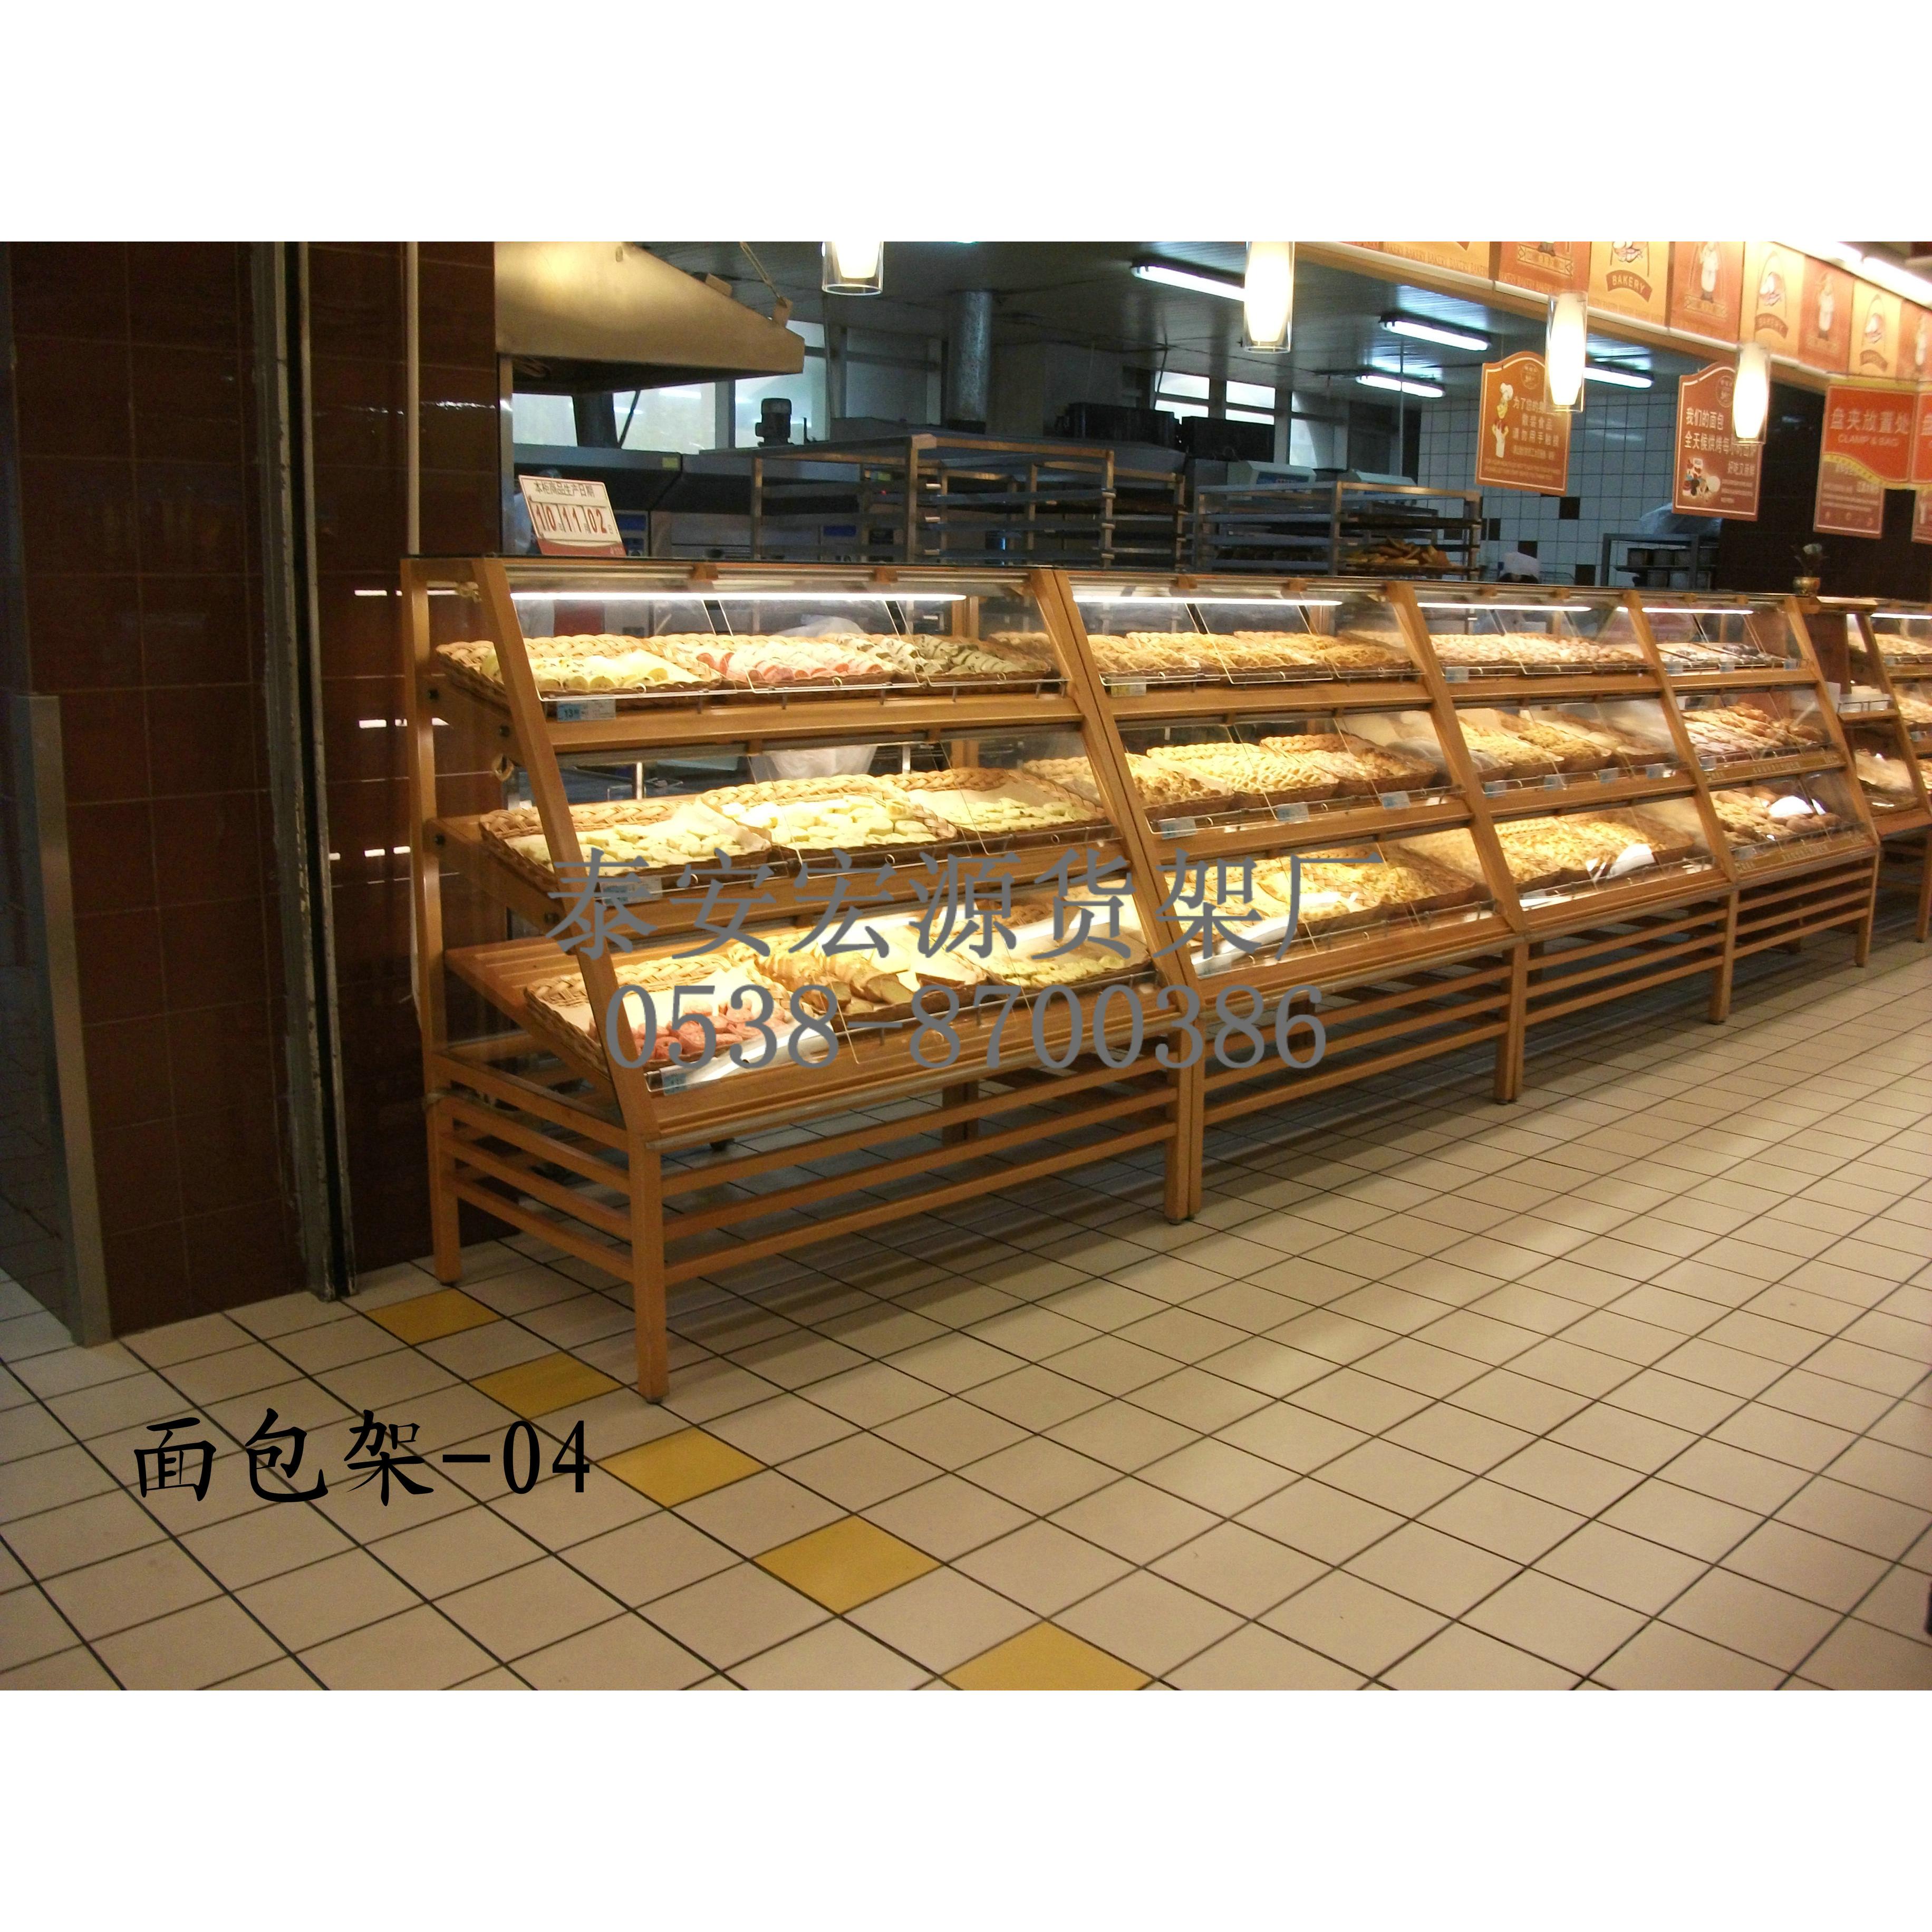 西点架 面包架 糕点架 超市木质货架